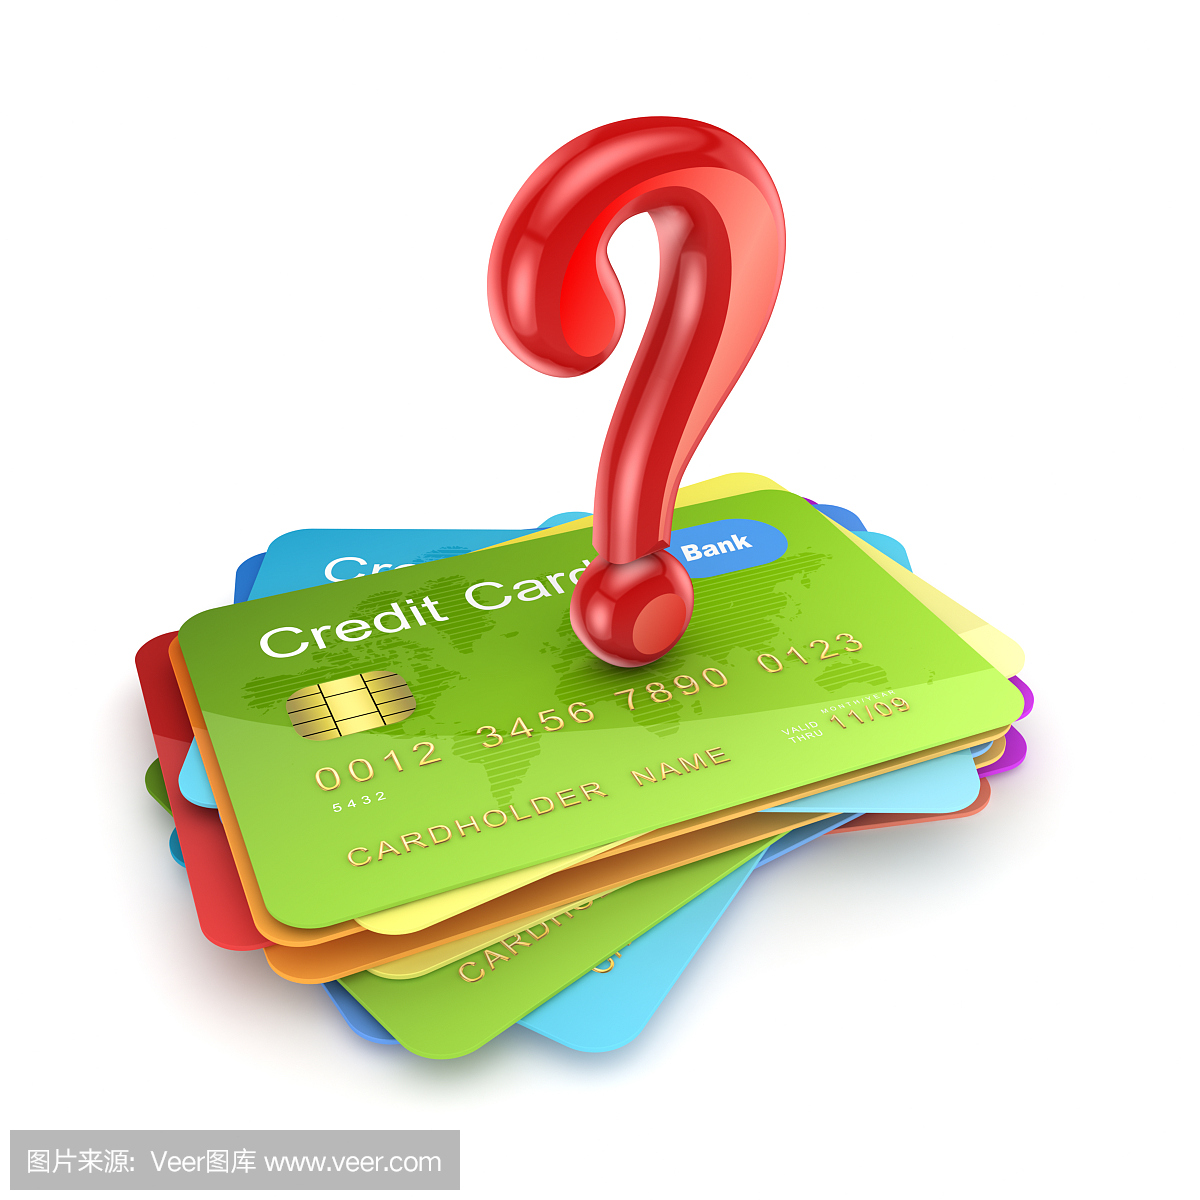 彩色信用卡上的红色查询标记。